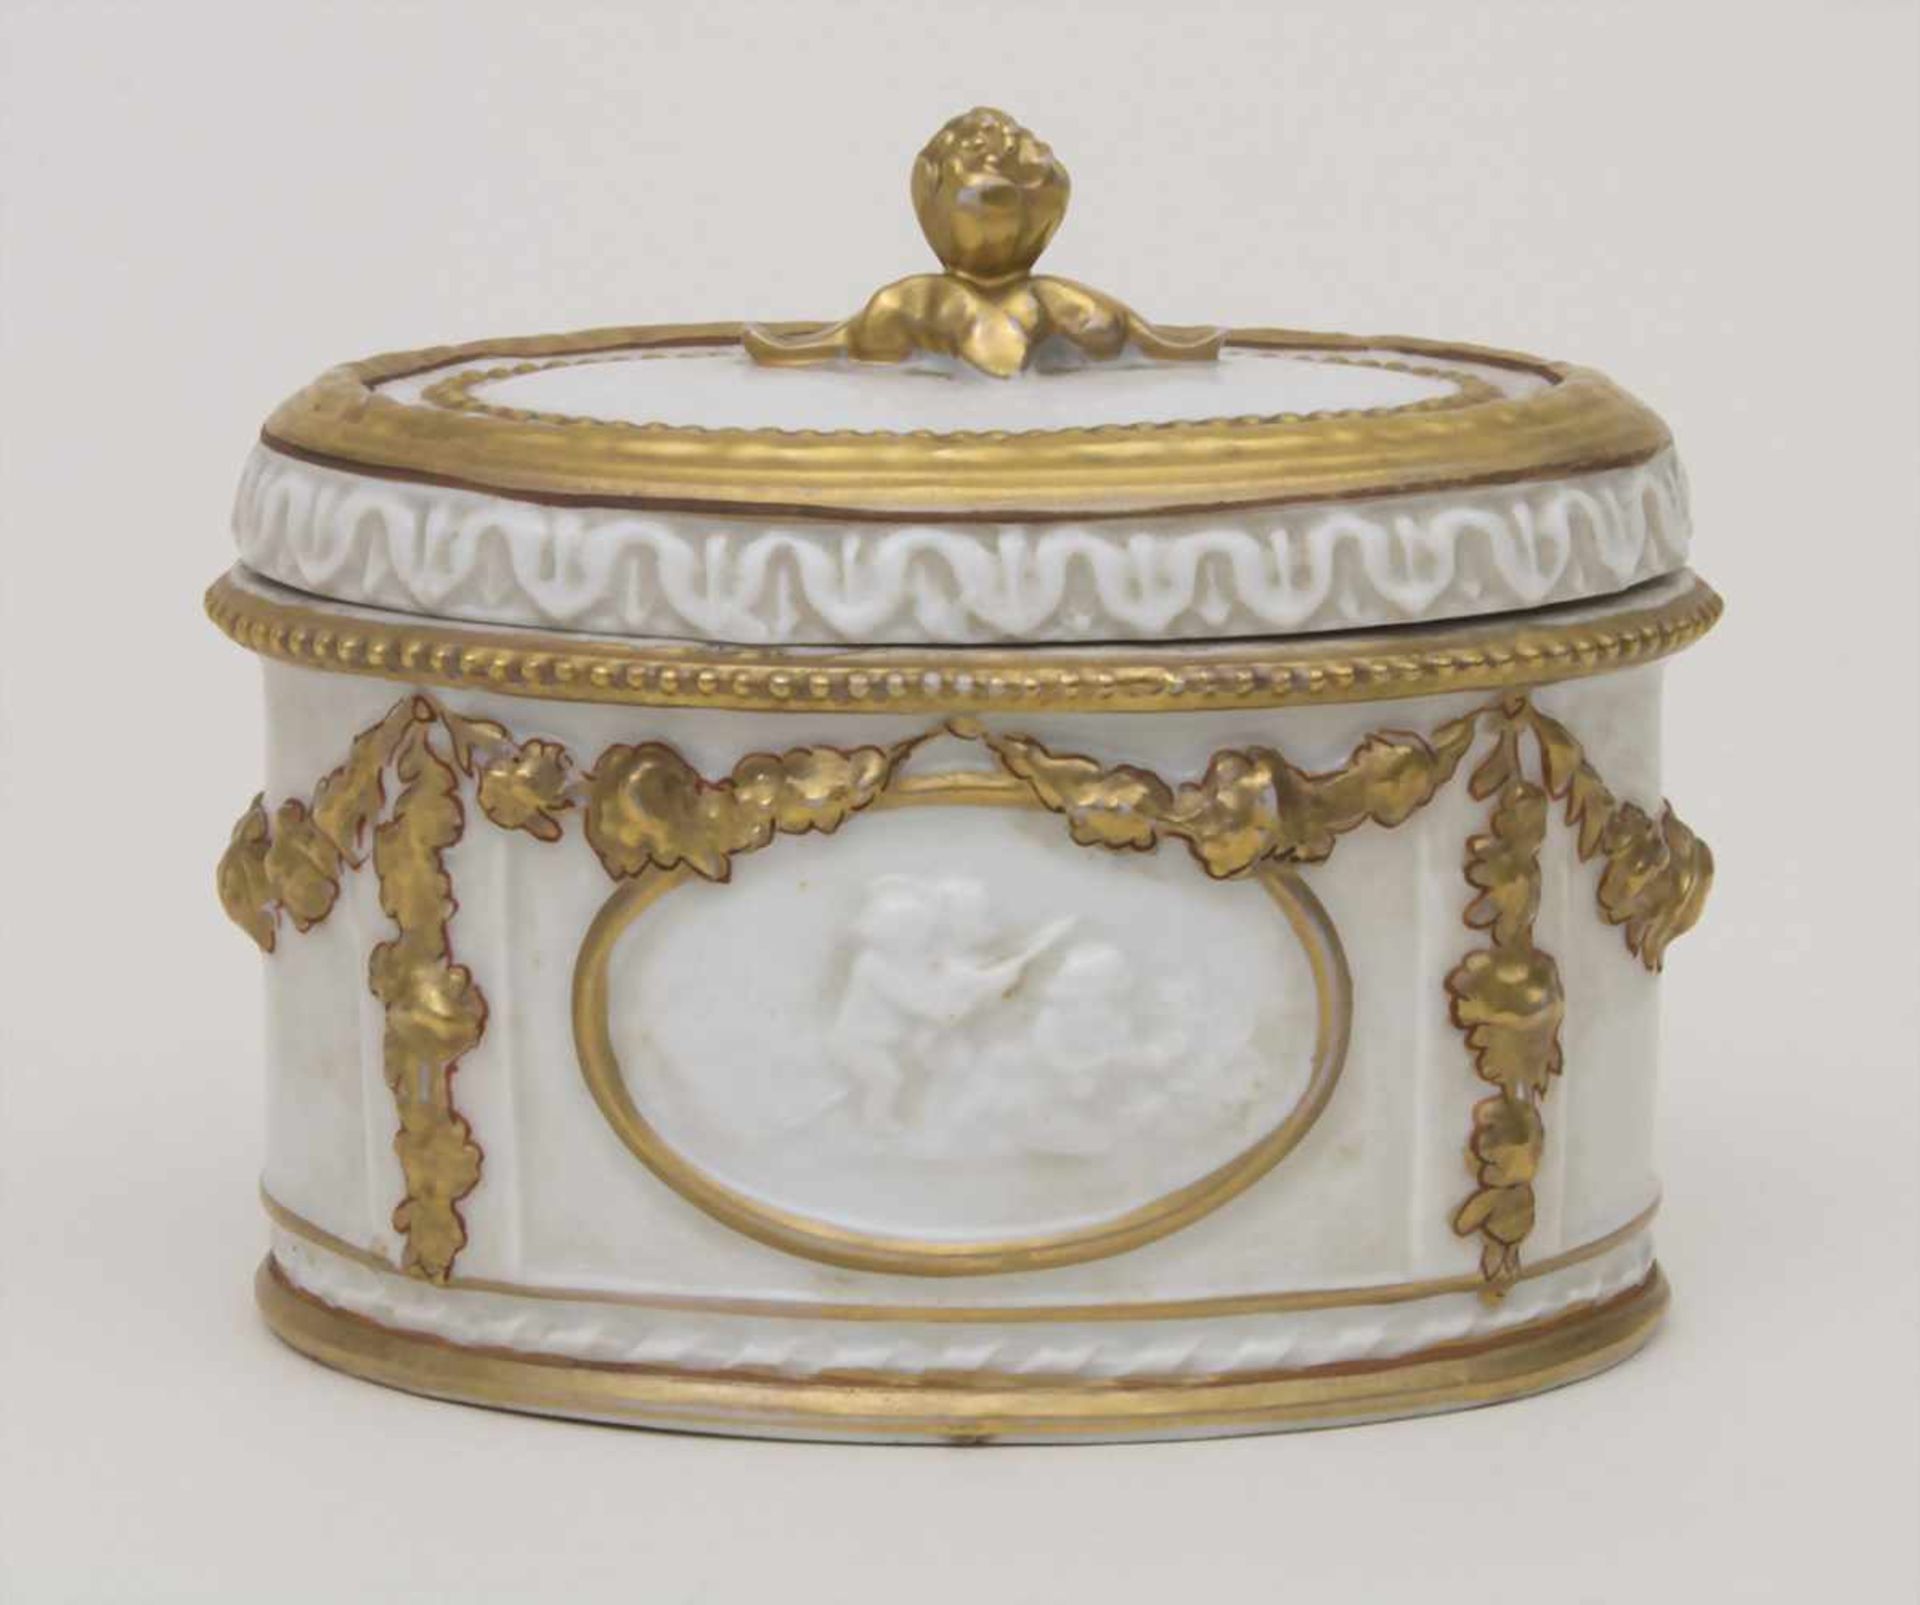 Deckeldose / A lidded box, Älteste Volkstedt, um 1900Material: Porzellan, goldstaffiert, glasiert, - Bild 3 aus 7